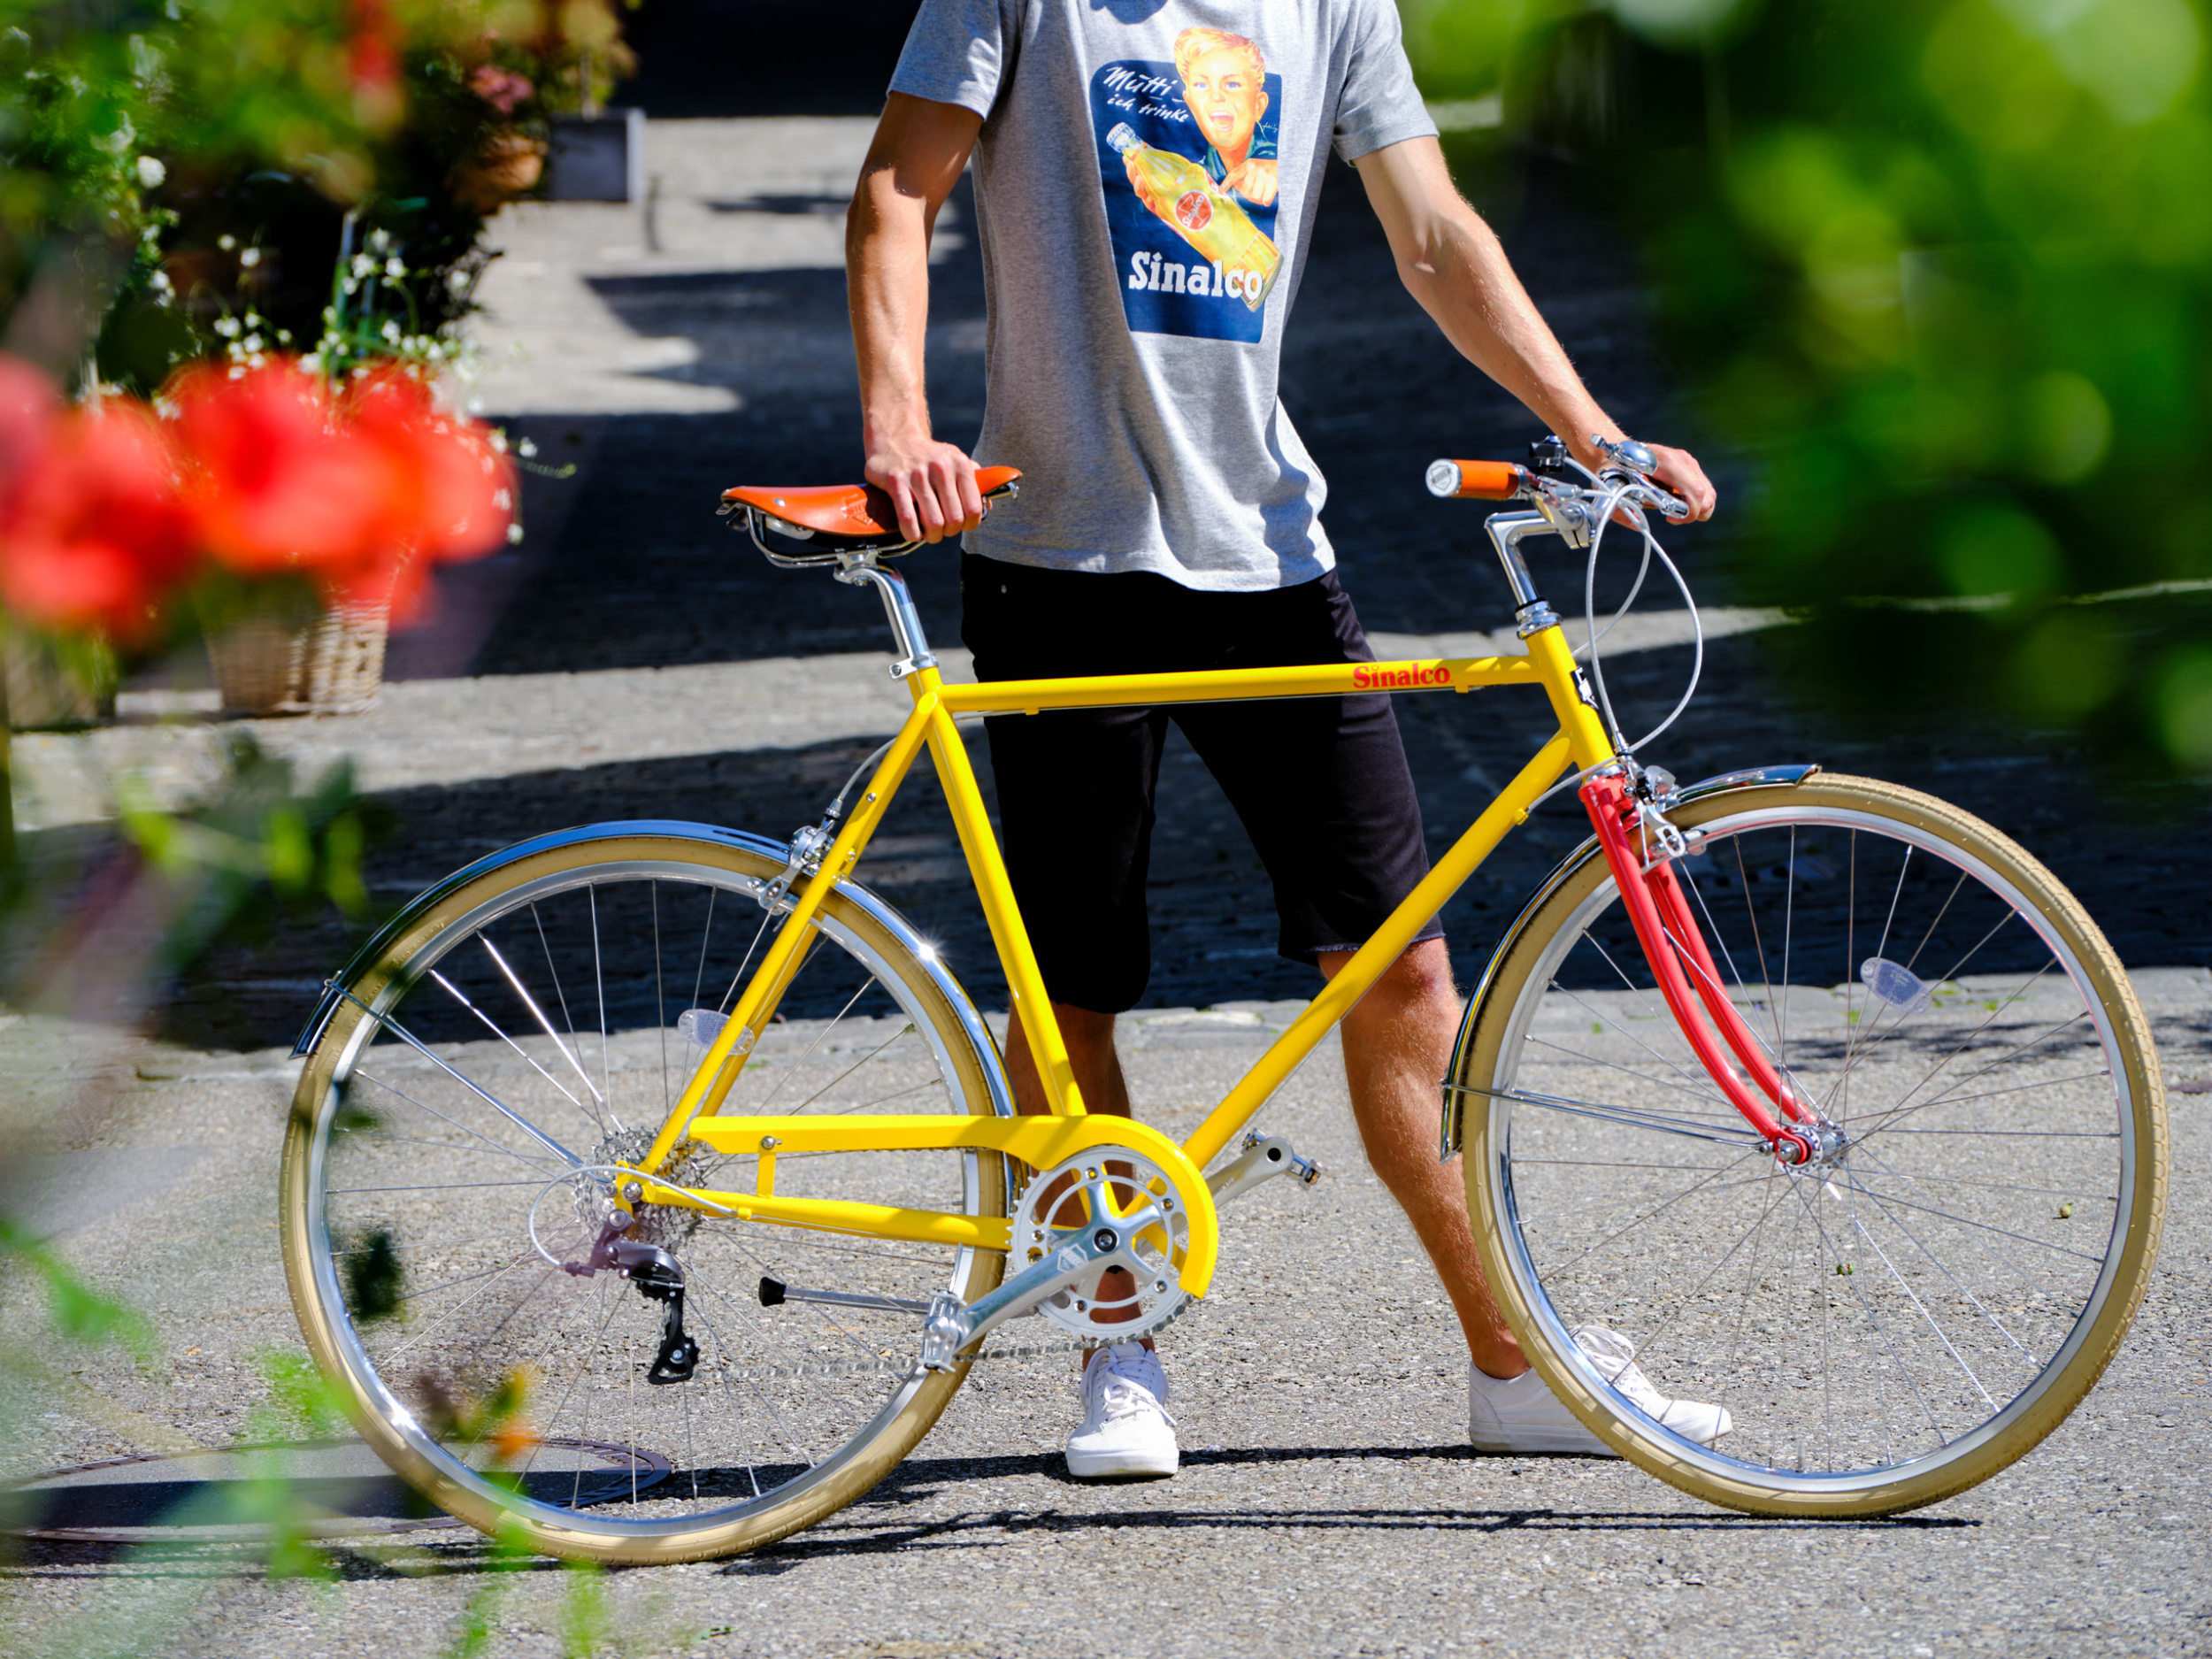 Ein Mann mit Sinalco T-Shirt schiebt ein Sinalco Fahrrad